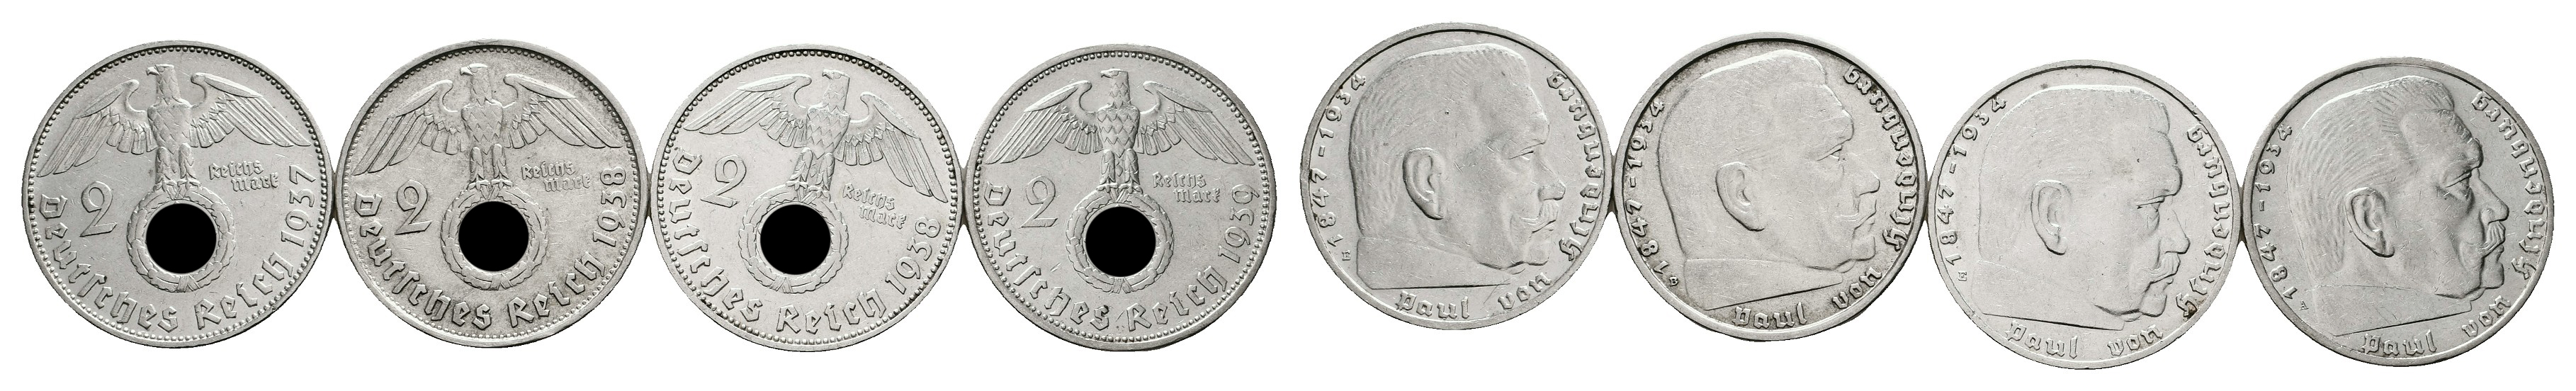  MGS BRD Kursmünzensatz 2006 G + 3 Serien Jahrgangsbriefmarken vertrieben durch DEUTSCHE POST   